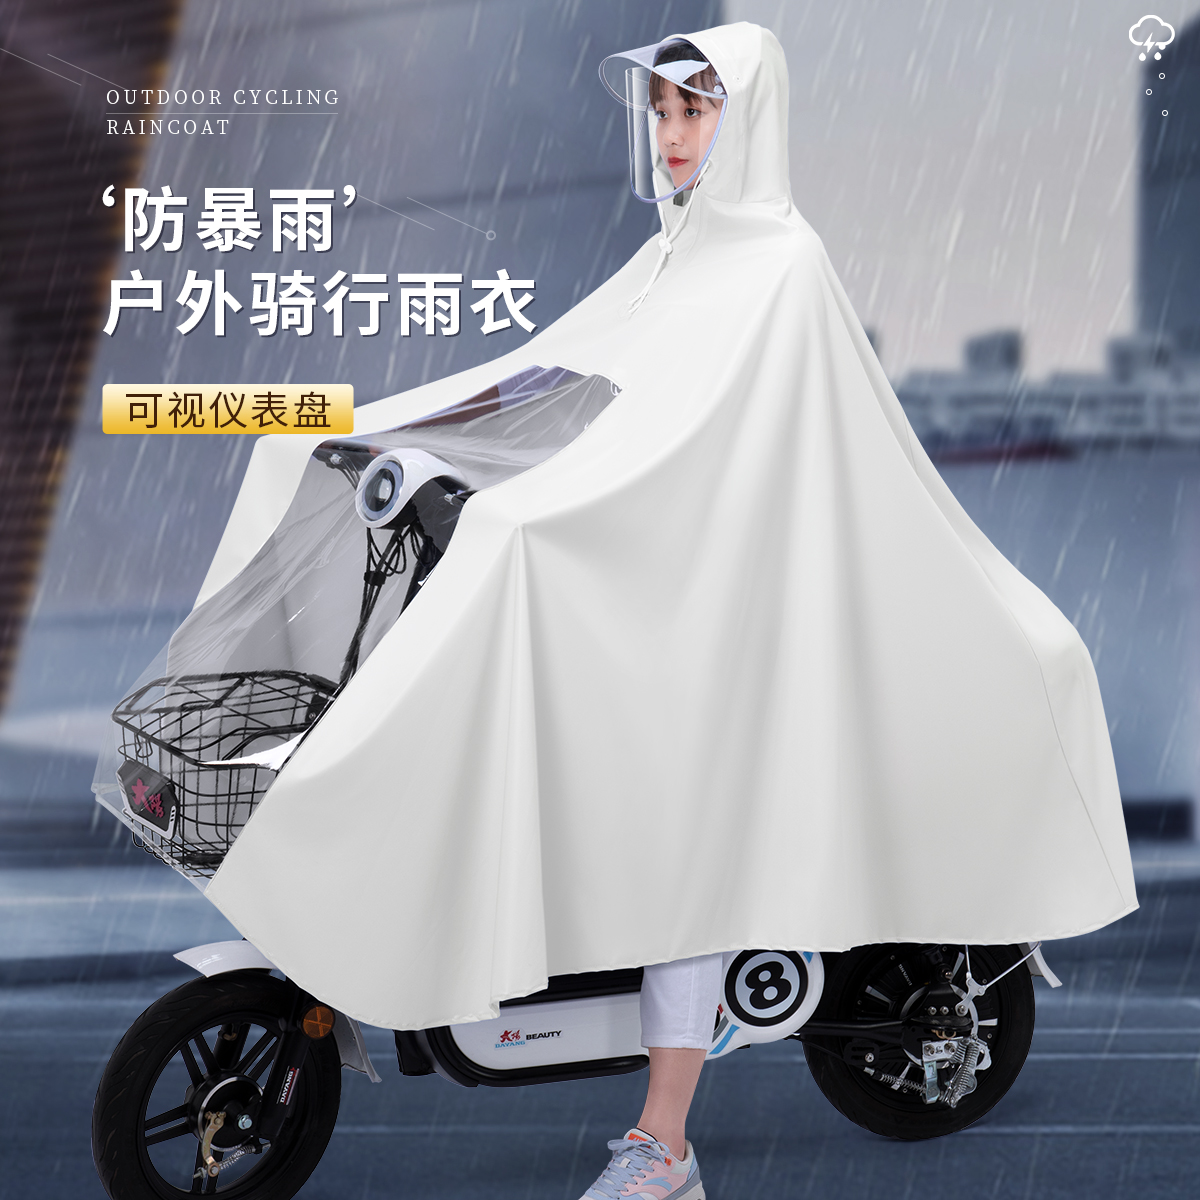 雨衣时尚电动摩托电瓶车加大单双人女新款长款全身防暴雨骑行雨披